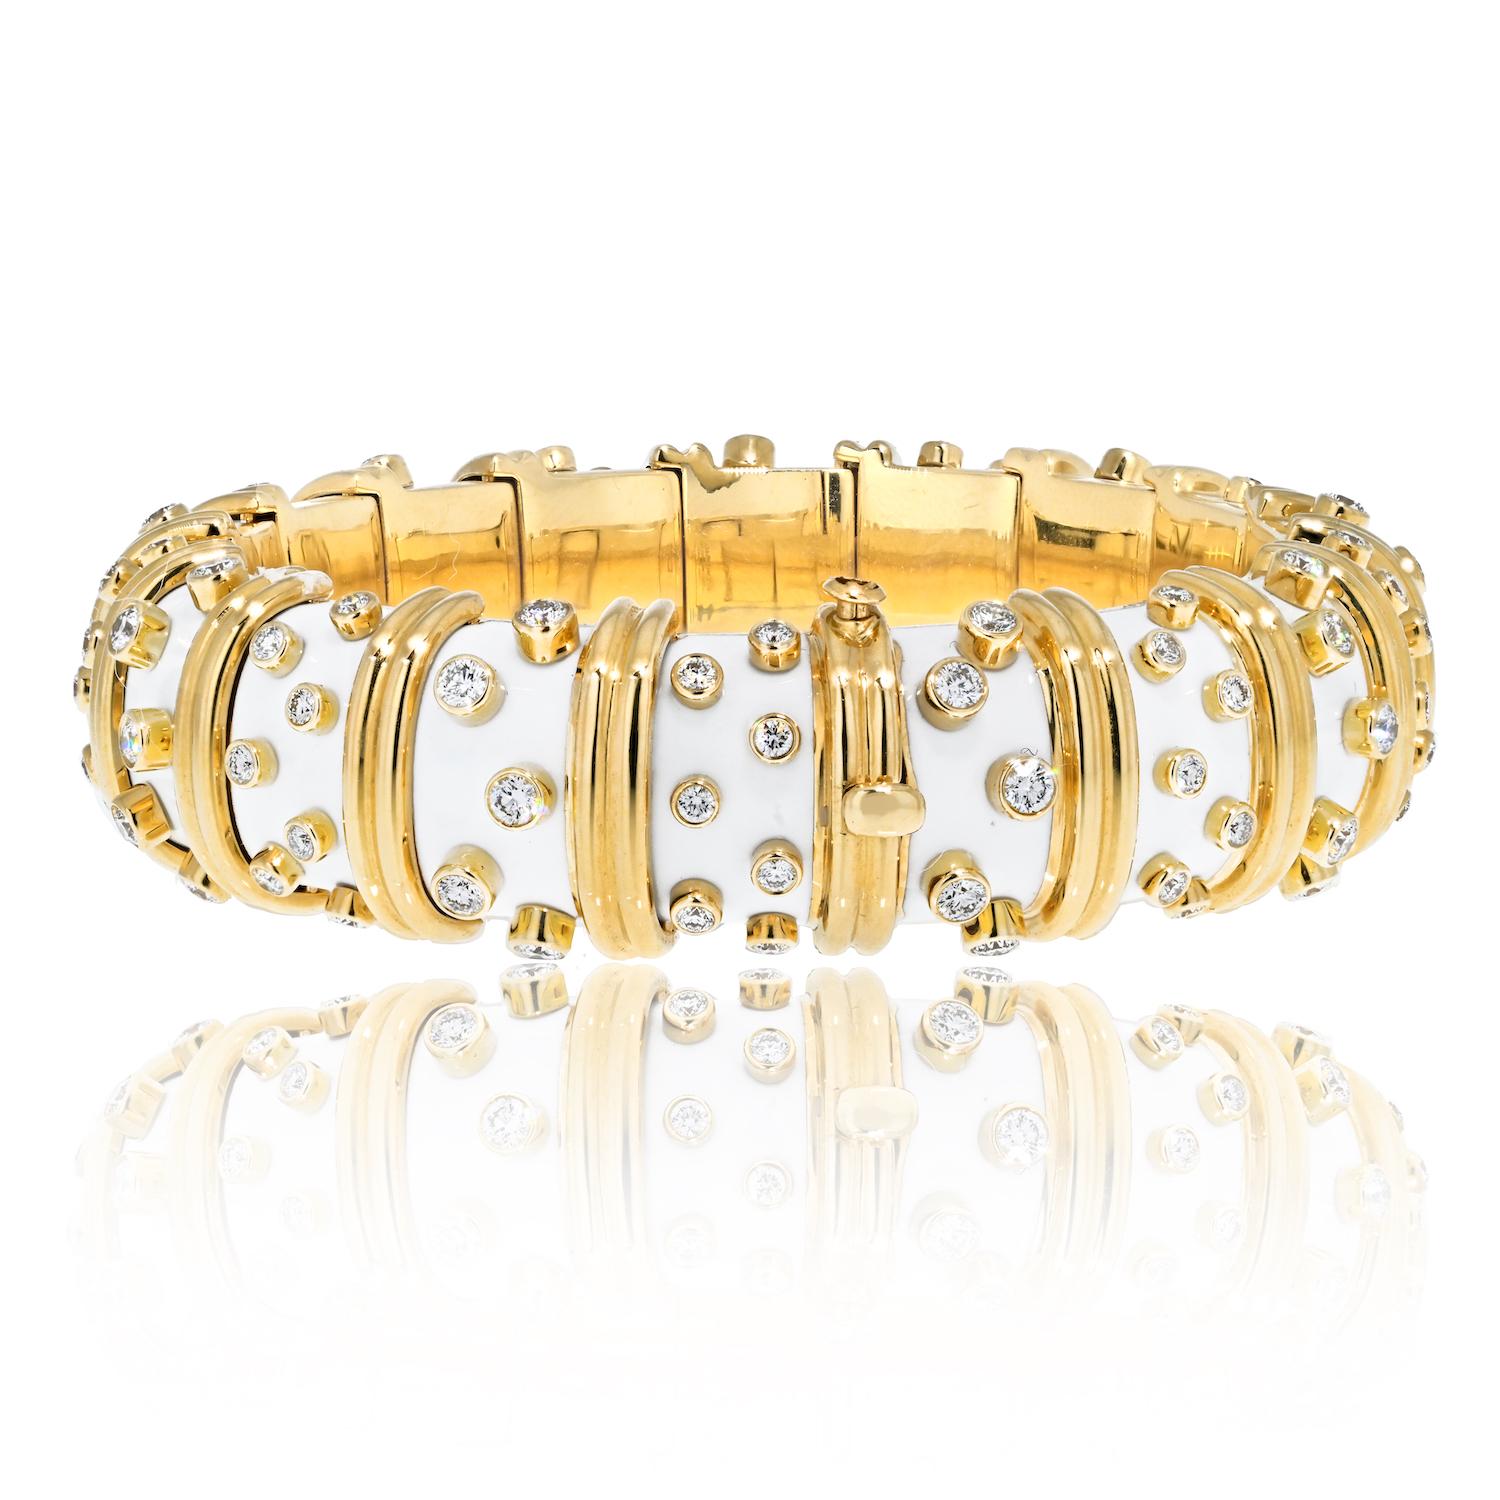 La collection Tiffany & Co. est un chef-d'œuvre artistique exceptionnel. Bracelet Schlumberger en platine et or jaune 18 carats, émail blanc et diamants. Cette pièce remarquable est un véritable témoignage de l'élégance intemporelle et de la célèbre